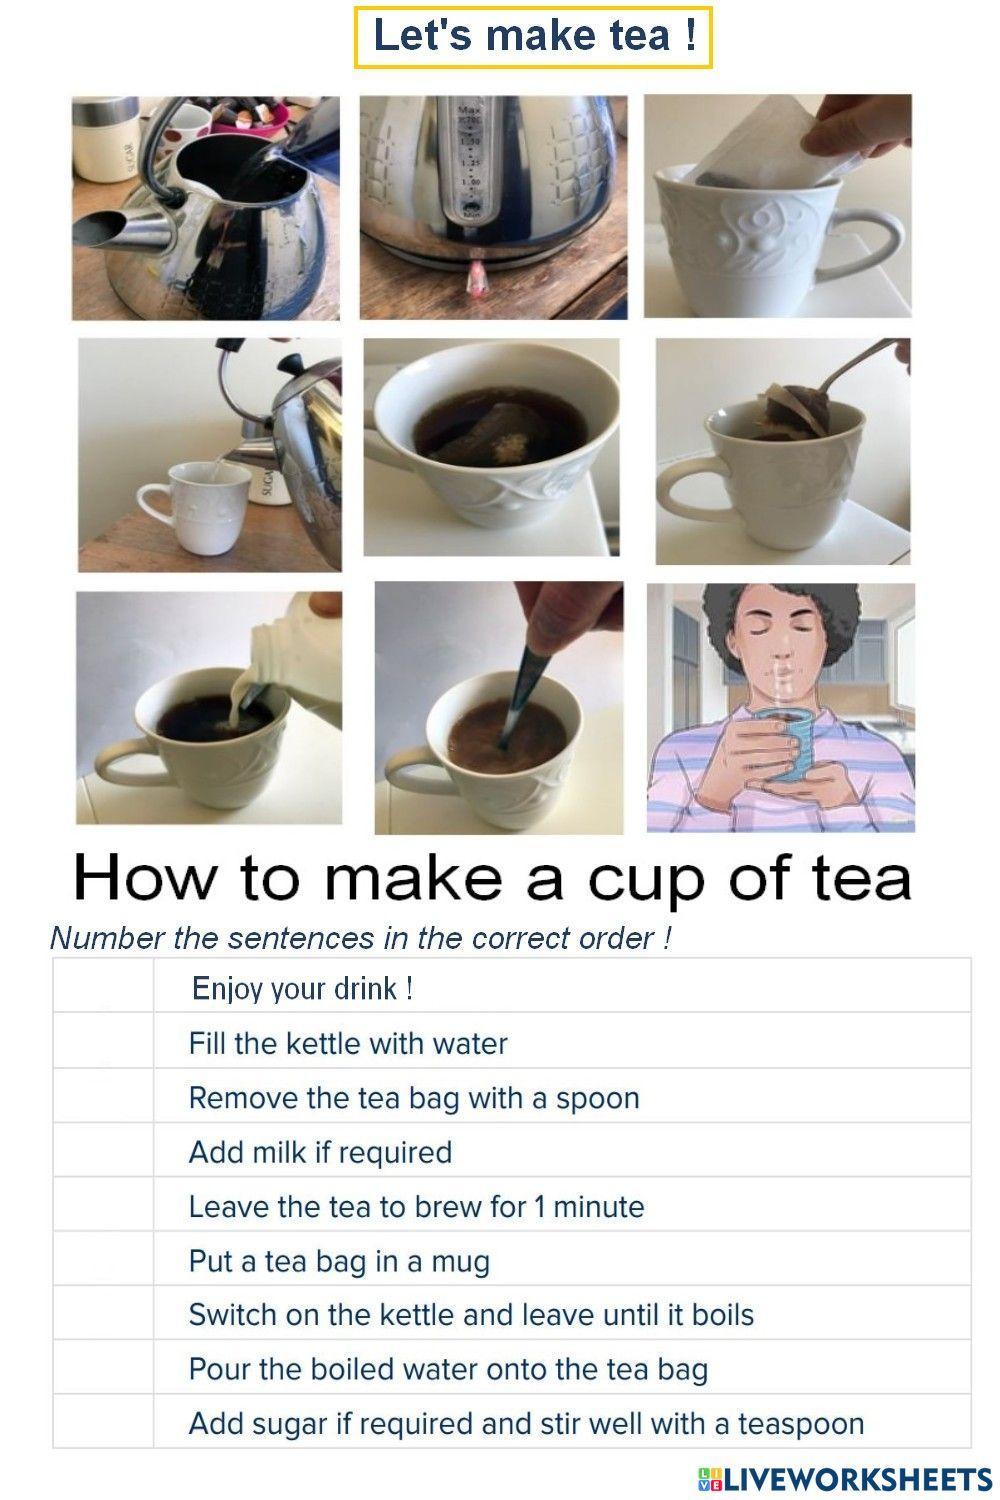 Let's make tea !